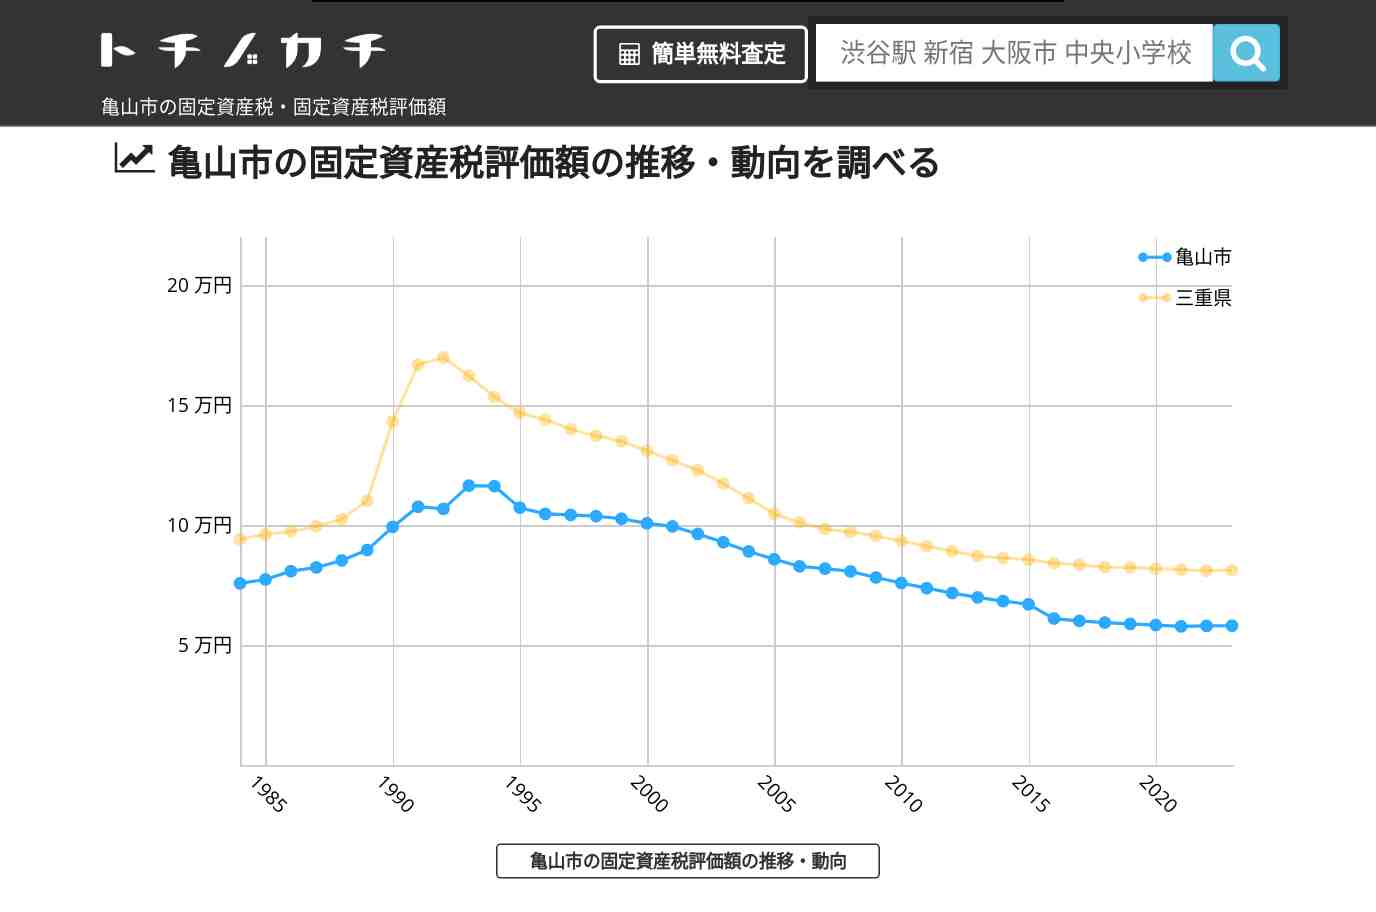 関小学校(三重県 亀山市)周辺の固定資産税・固定資産税評価額 | トチノカチ